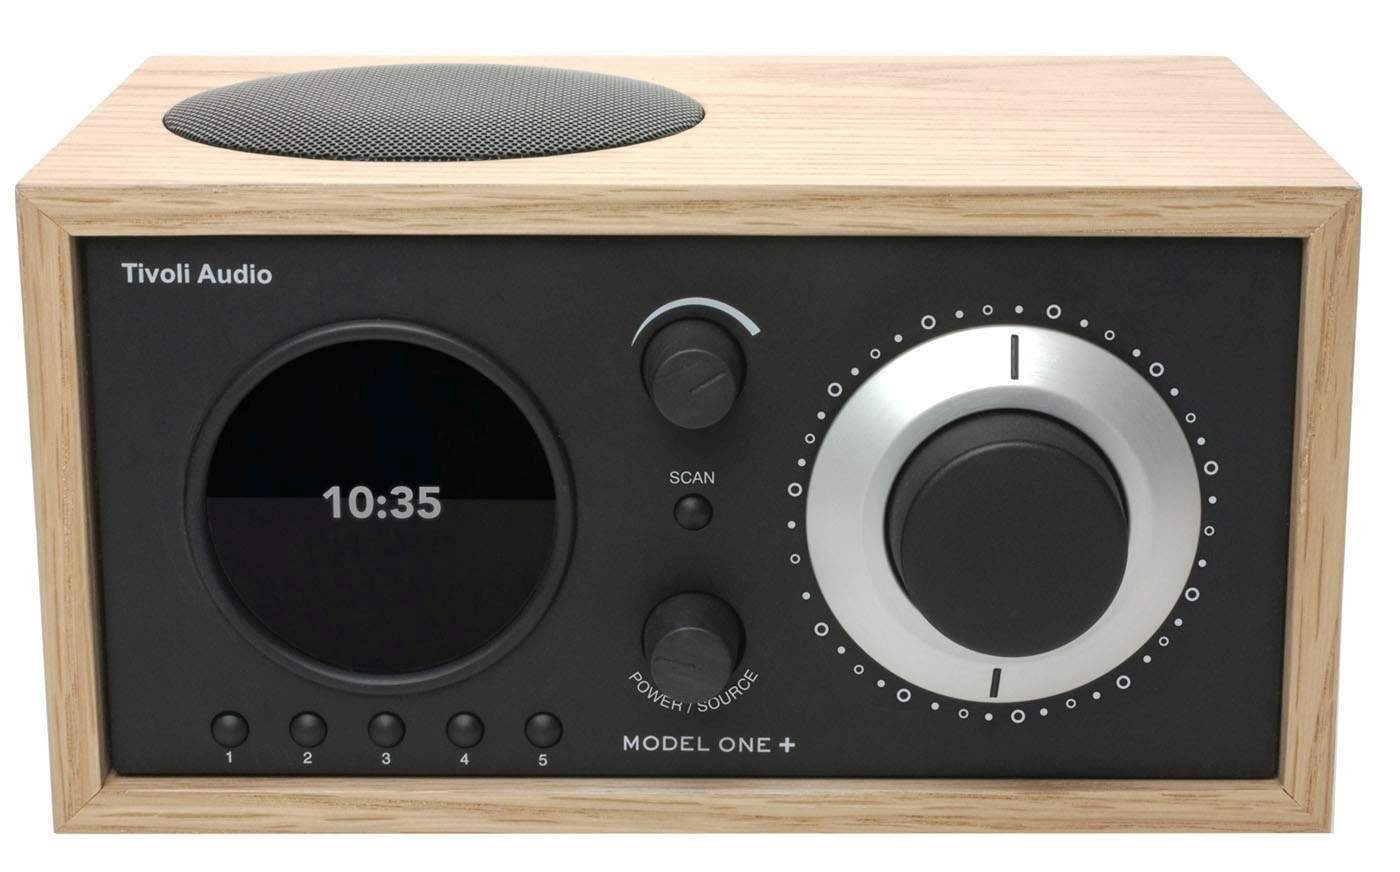 Tivoli Audio Model ONE+ Eiche/schwarz Digitalradio (DAB) (Digitalradio (DAB),FM-Tuner, Wecker,Display mit Uhranzeige, Digitalradio DAB+ und FM-Tuner, Bluetooth-Empfänger, Fernbedienung)